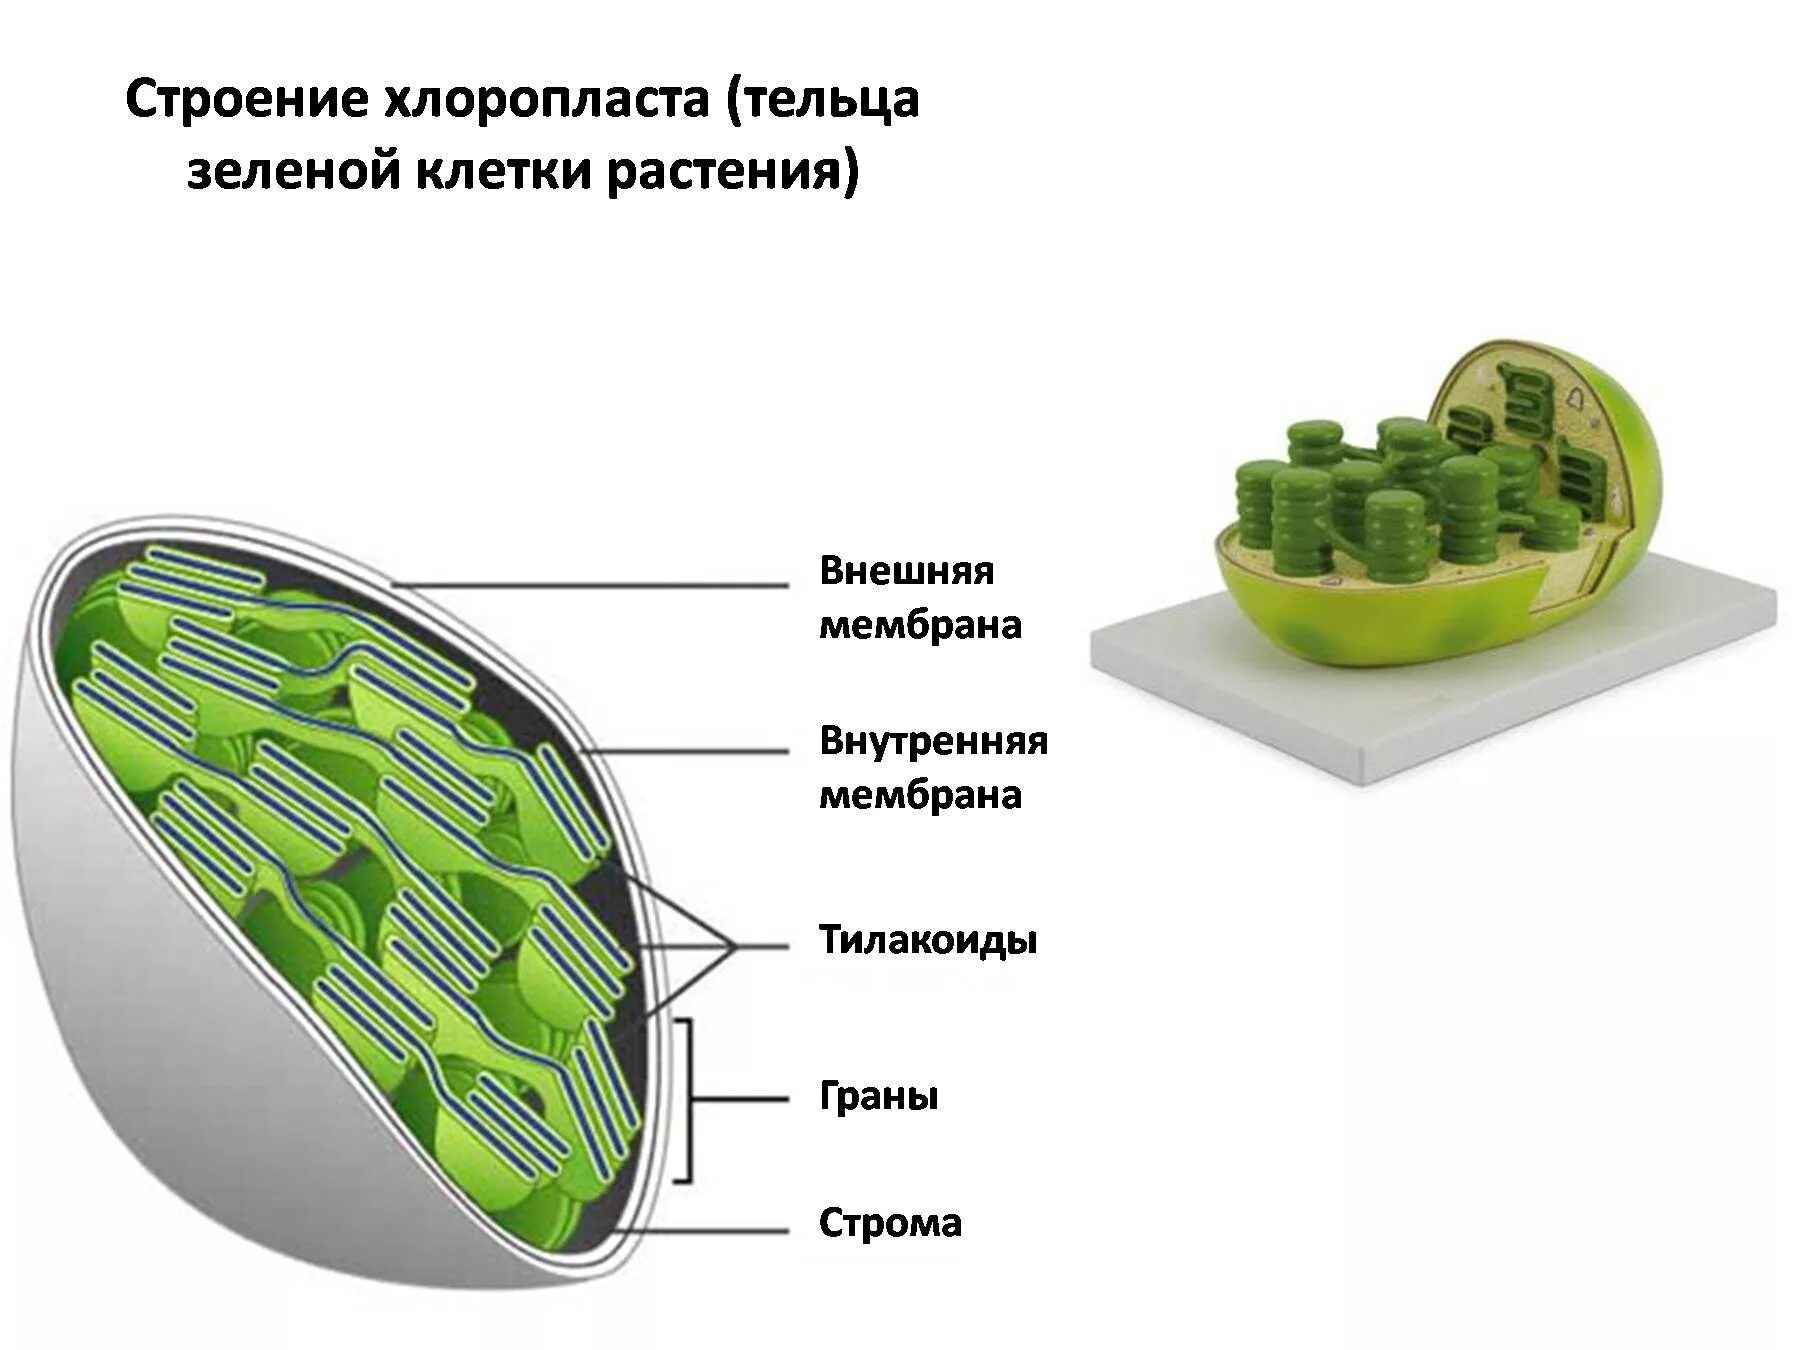 Хлоропласты в зеленых клетках. Хлоропласты Строма тилакоиды граны. Строение хлоропласта растительной клетки. Строение клетки хлоропласты. Строма и тилакоиды.